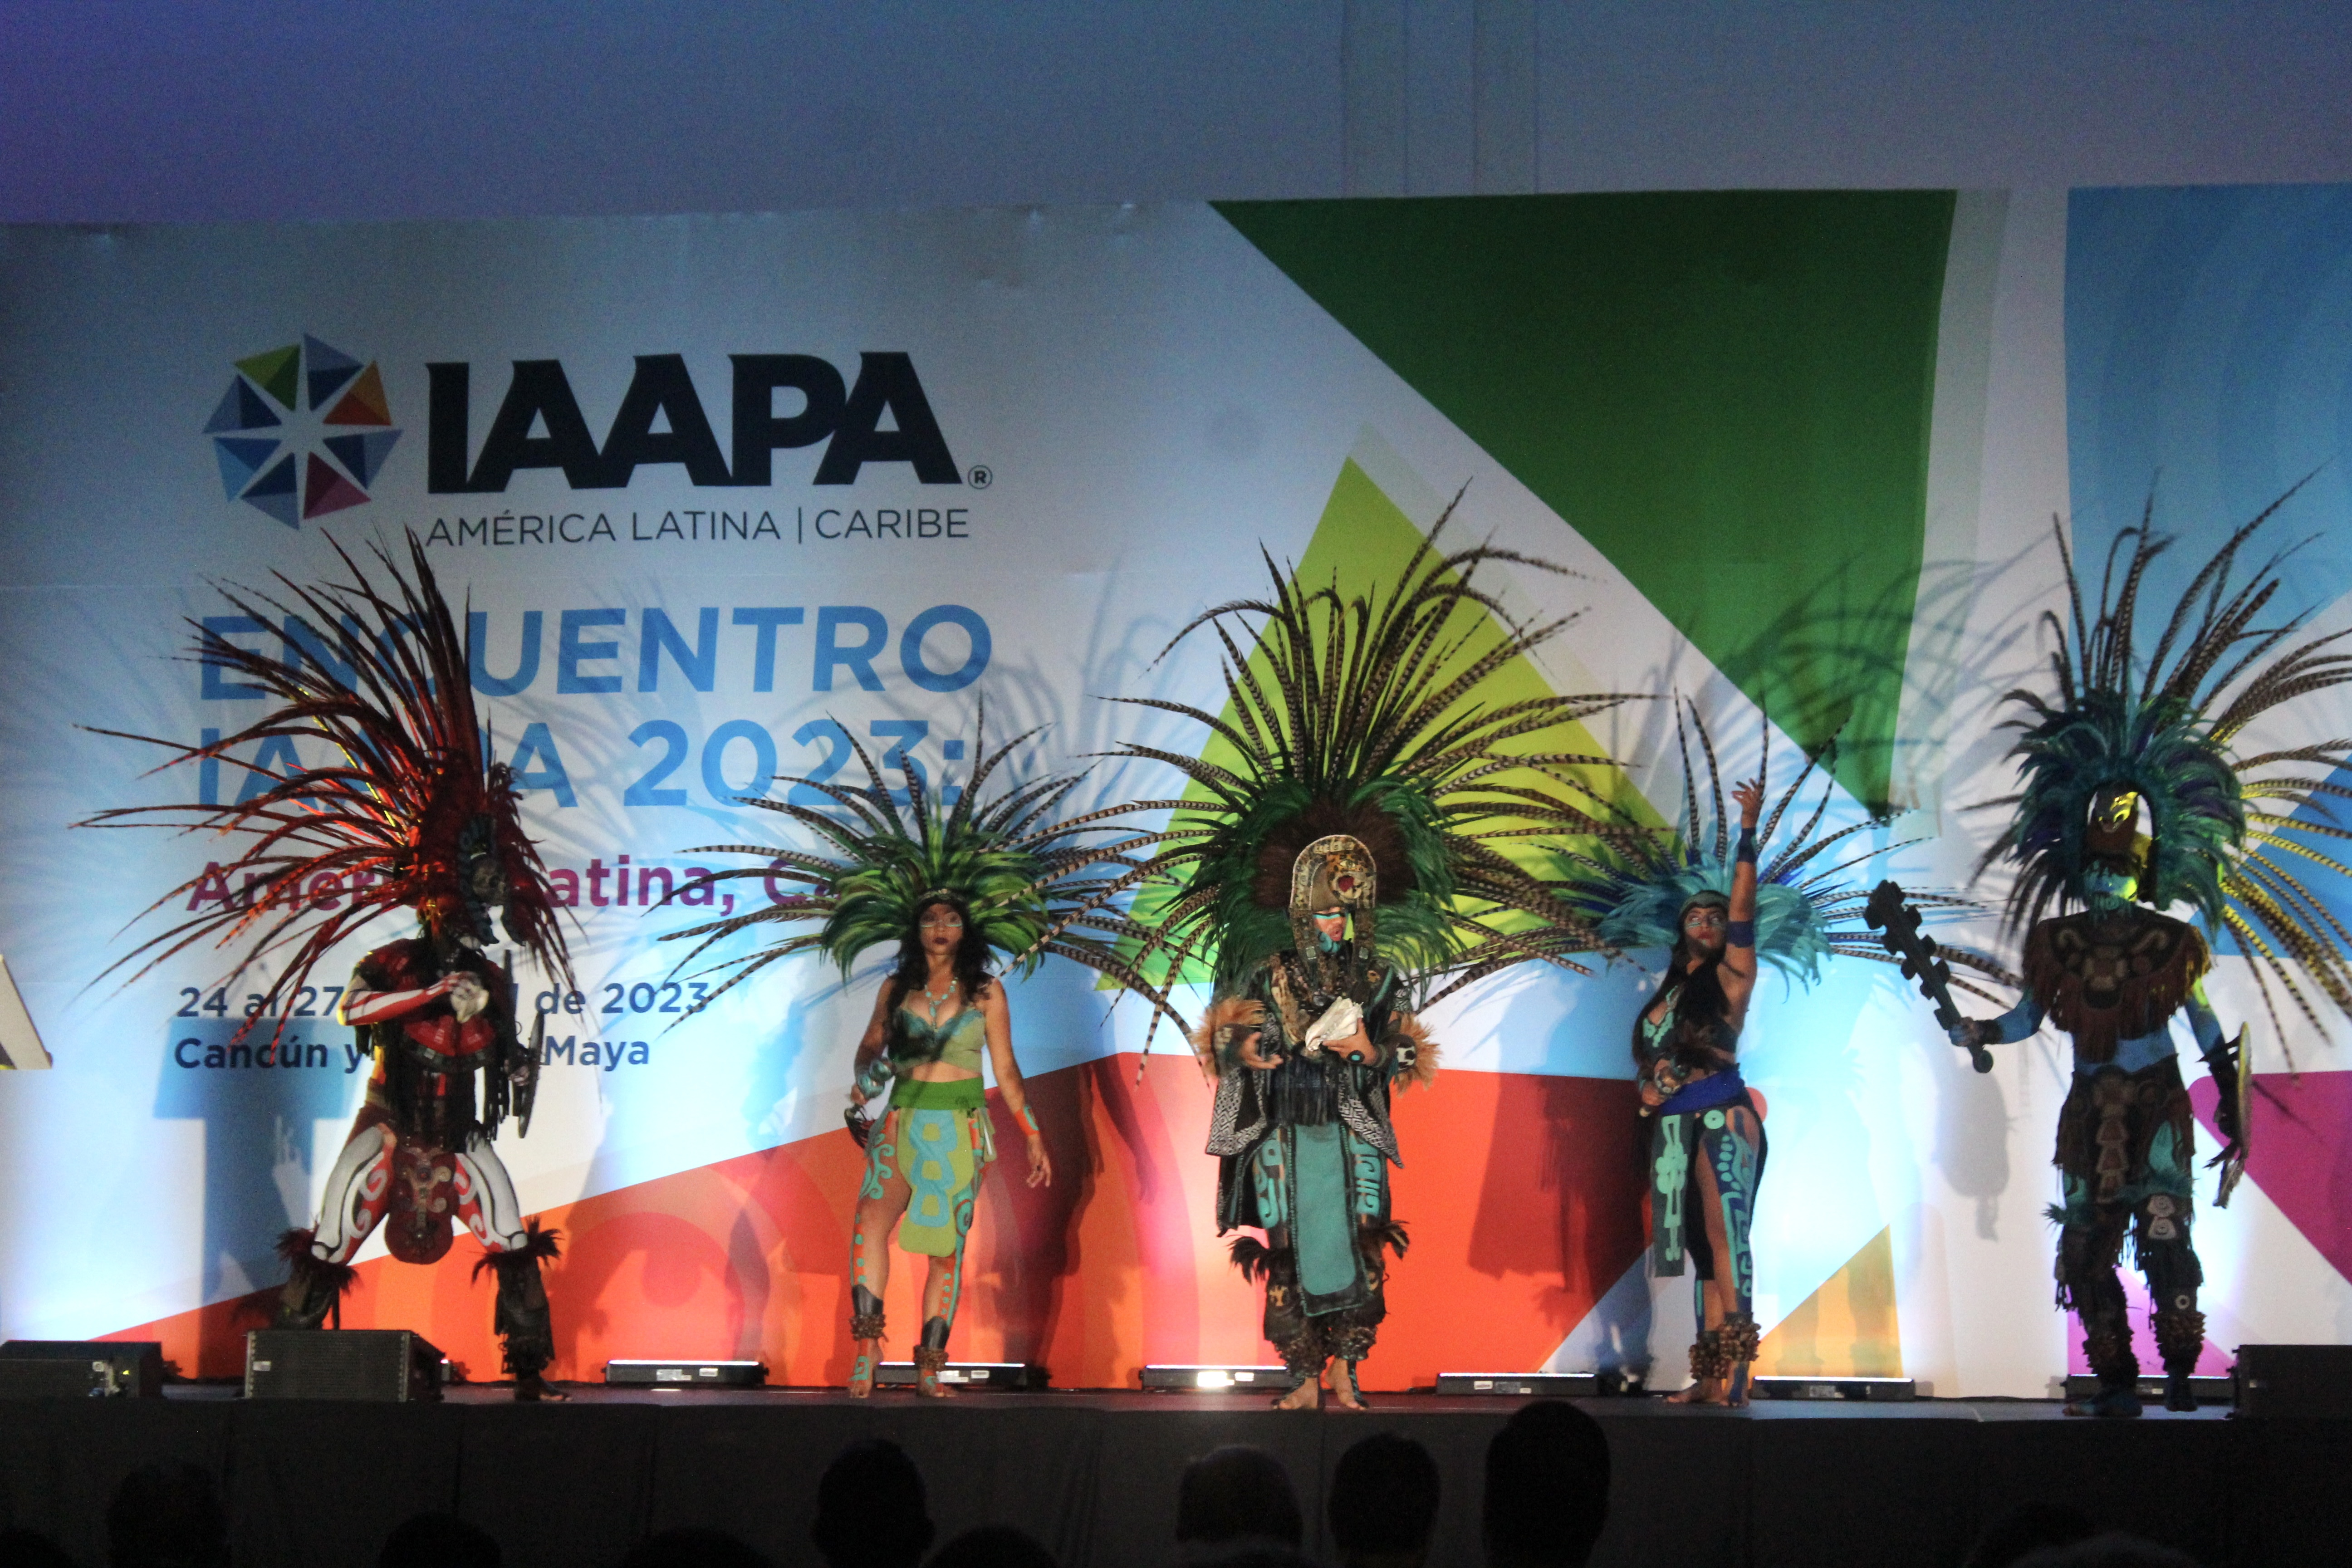 "Les danseurs interprètent un Concheros mexicain régional pour ouvrir le sommet IAAPA d'Amérique latine."